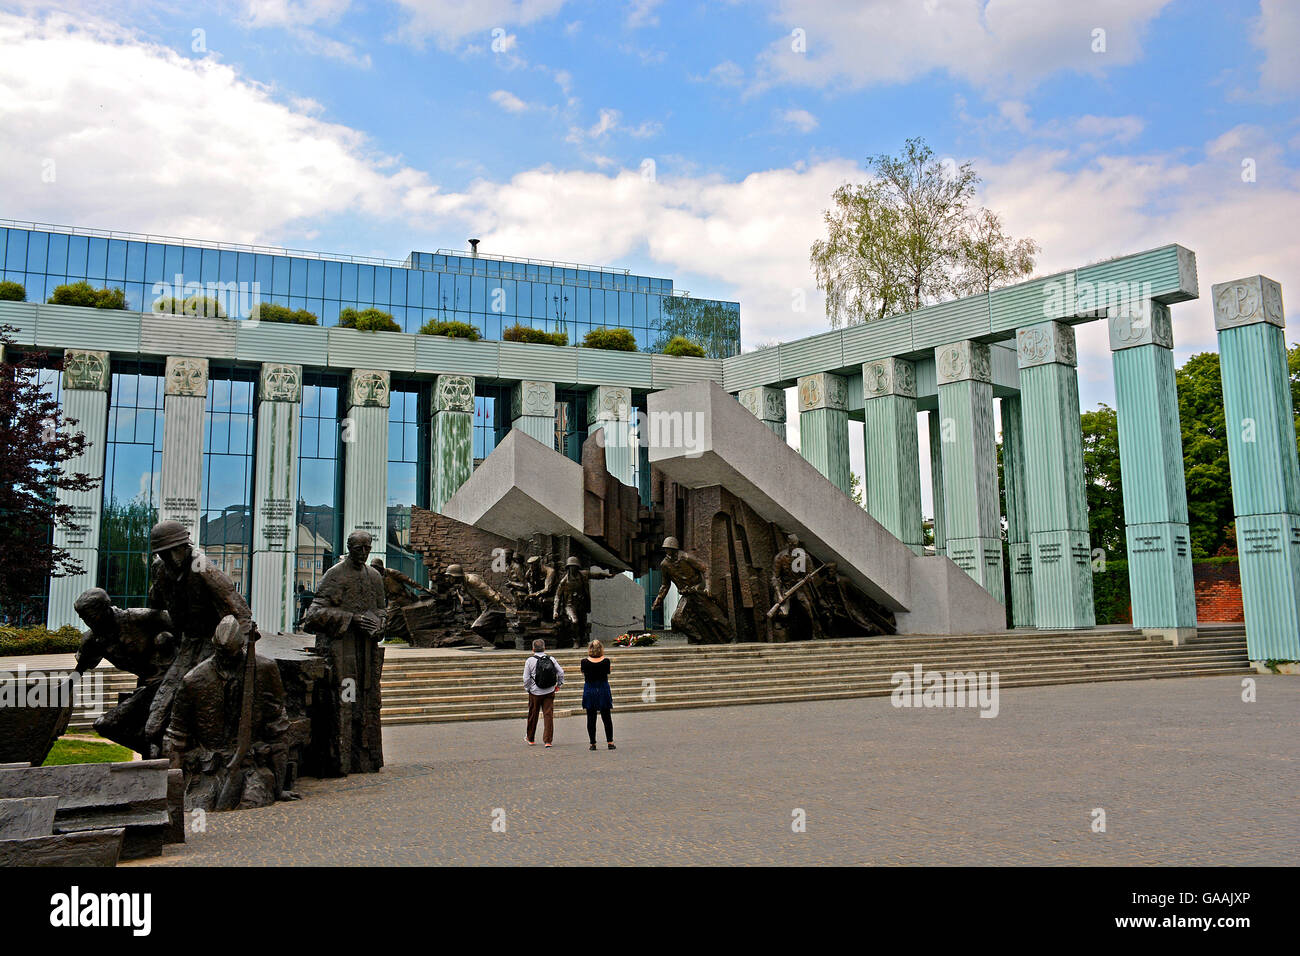 Monument du soulèvement de Varsovie Varsovie Pologne Banque D'Images